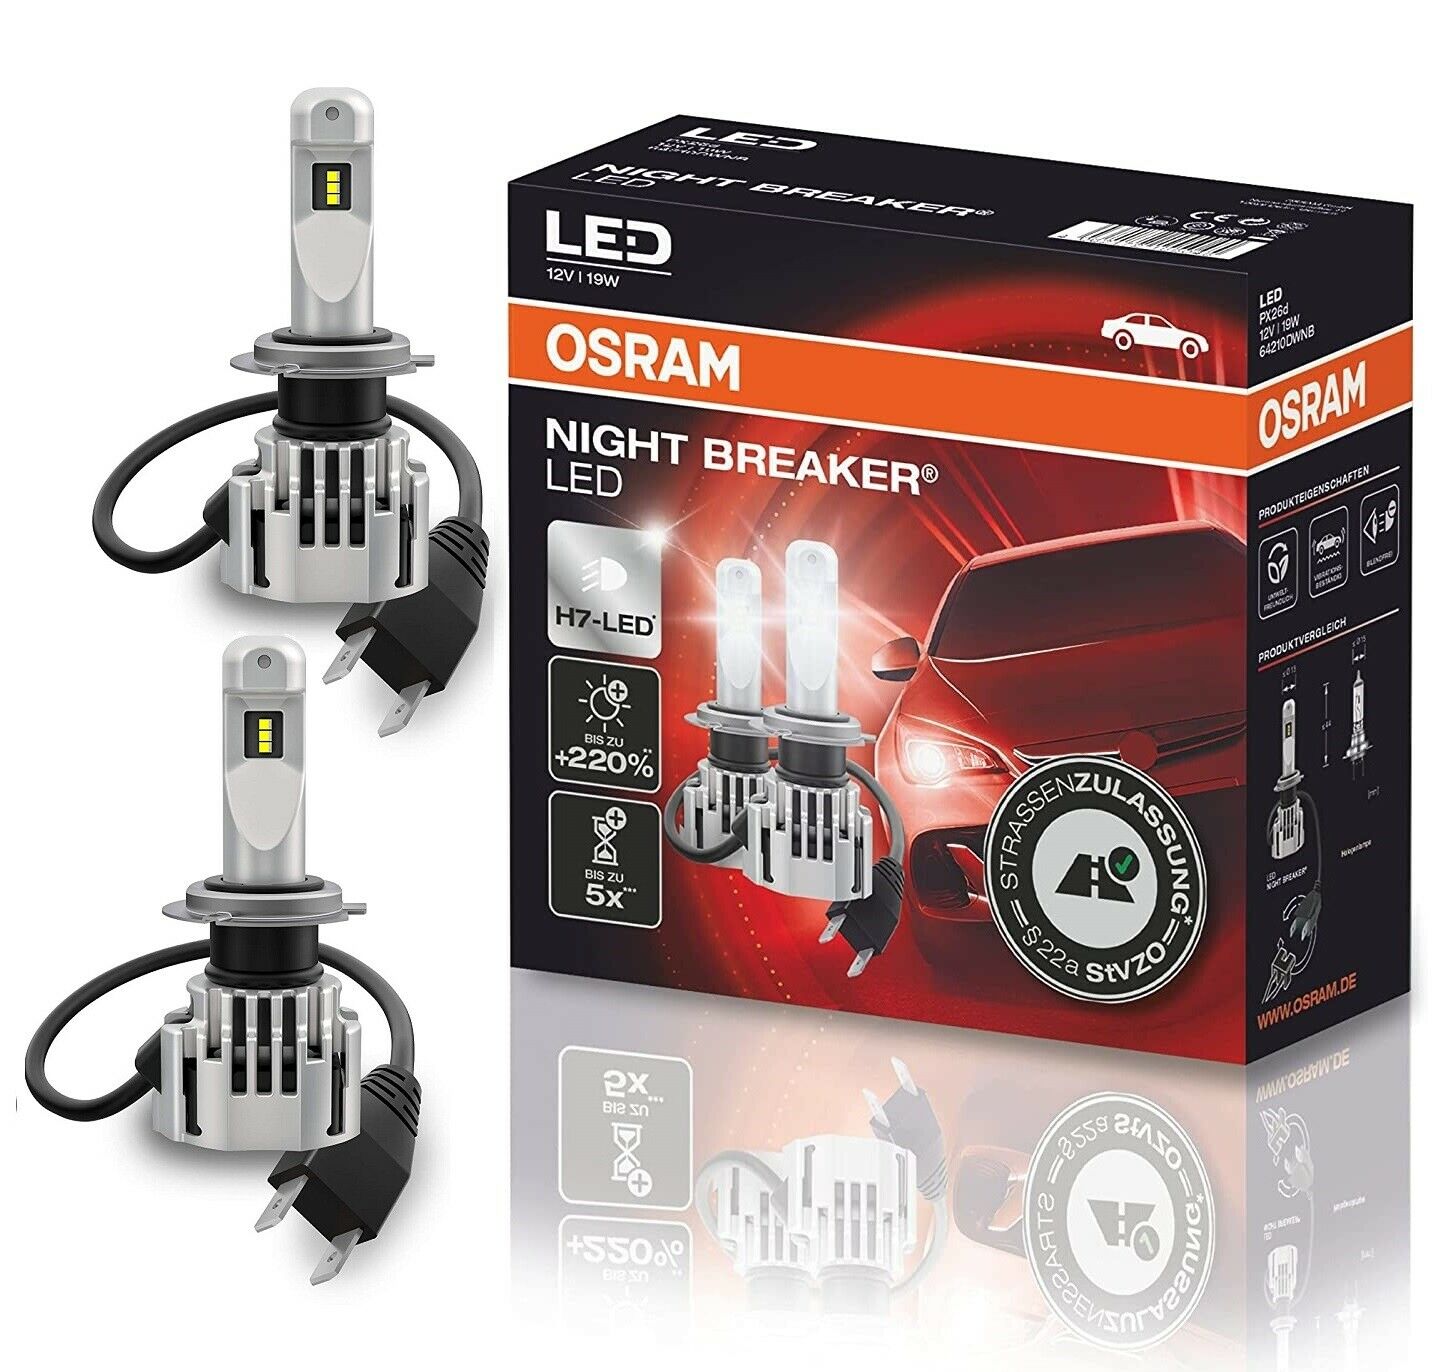 OSRAM Night Breaker H7 LED Nachrüstlampen + CanBus Adapter für VW Passat 3C  B7, VW, Night Breaker LED (fahrzeugspezifisch), OSRAM Night Breaker LED, Beleuchtung